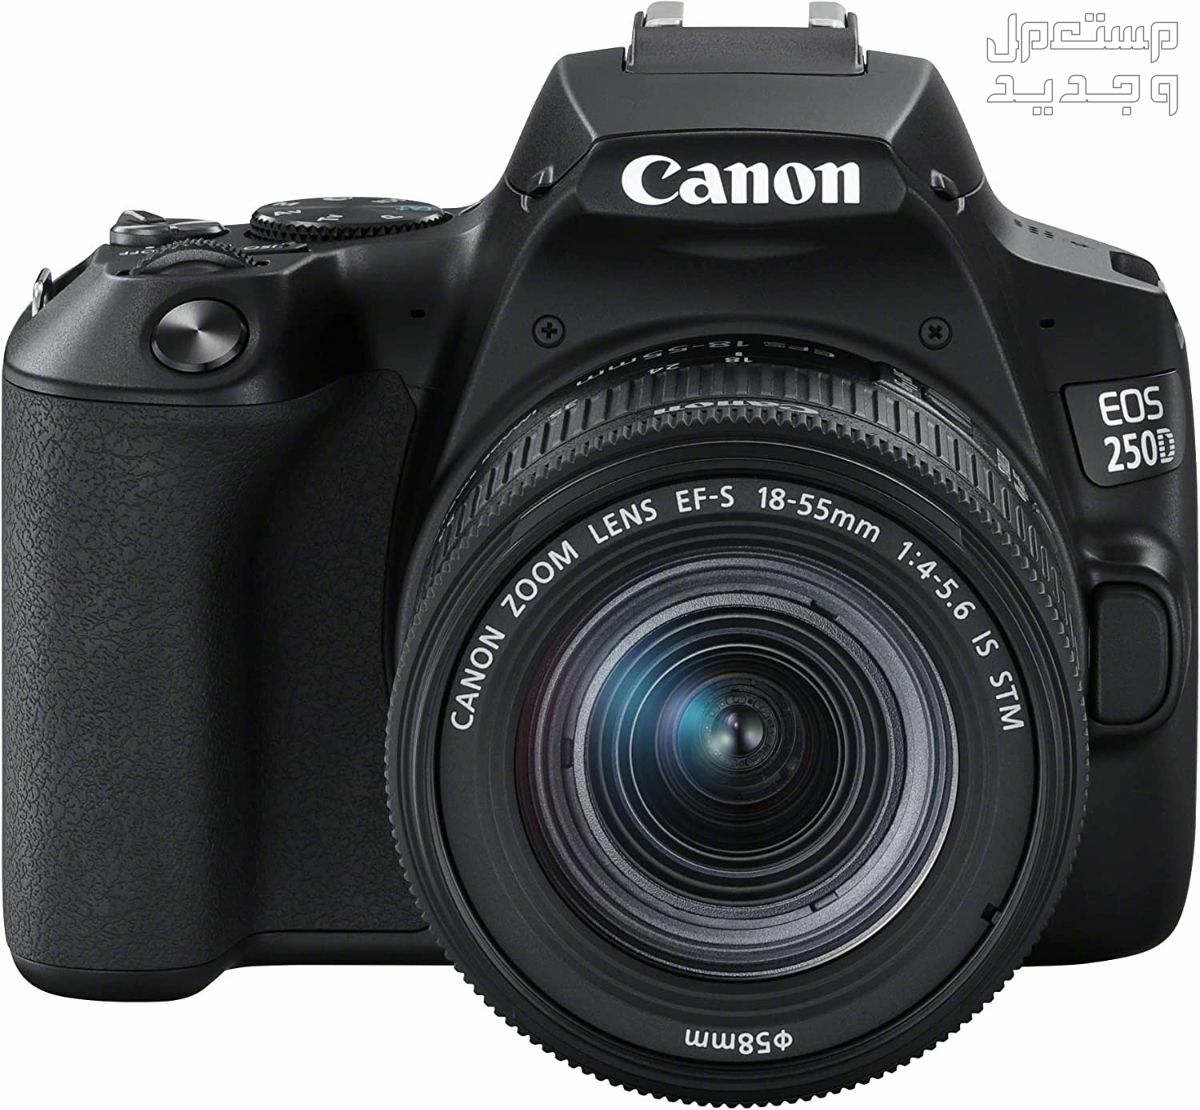 سعر ومميزات ومواصفات أرخص 5 كاميرات تصوير من كانون في سوريا مميزات كاميرا Canon EOS 250D